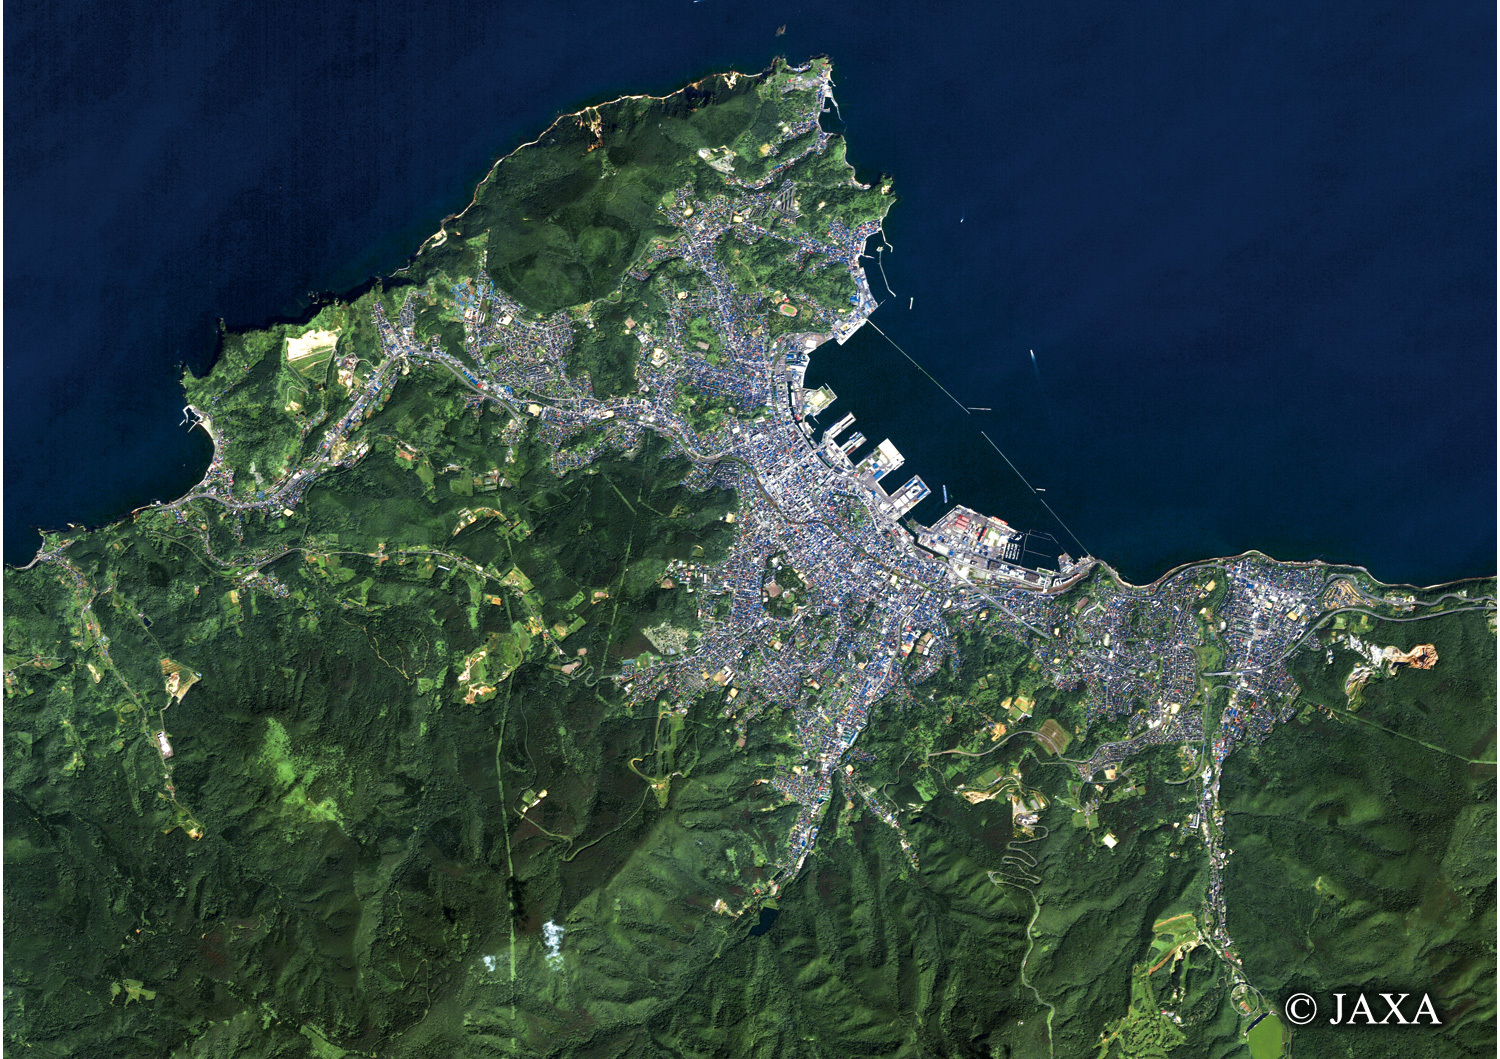 だいちから見た日本の都市 小樽市街地:衛星画像